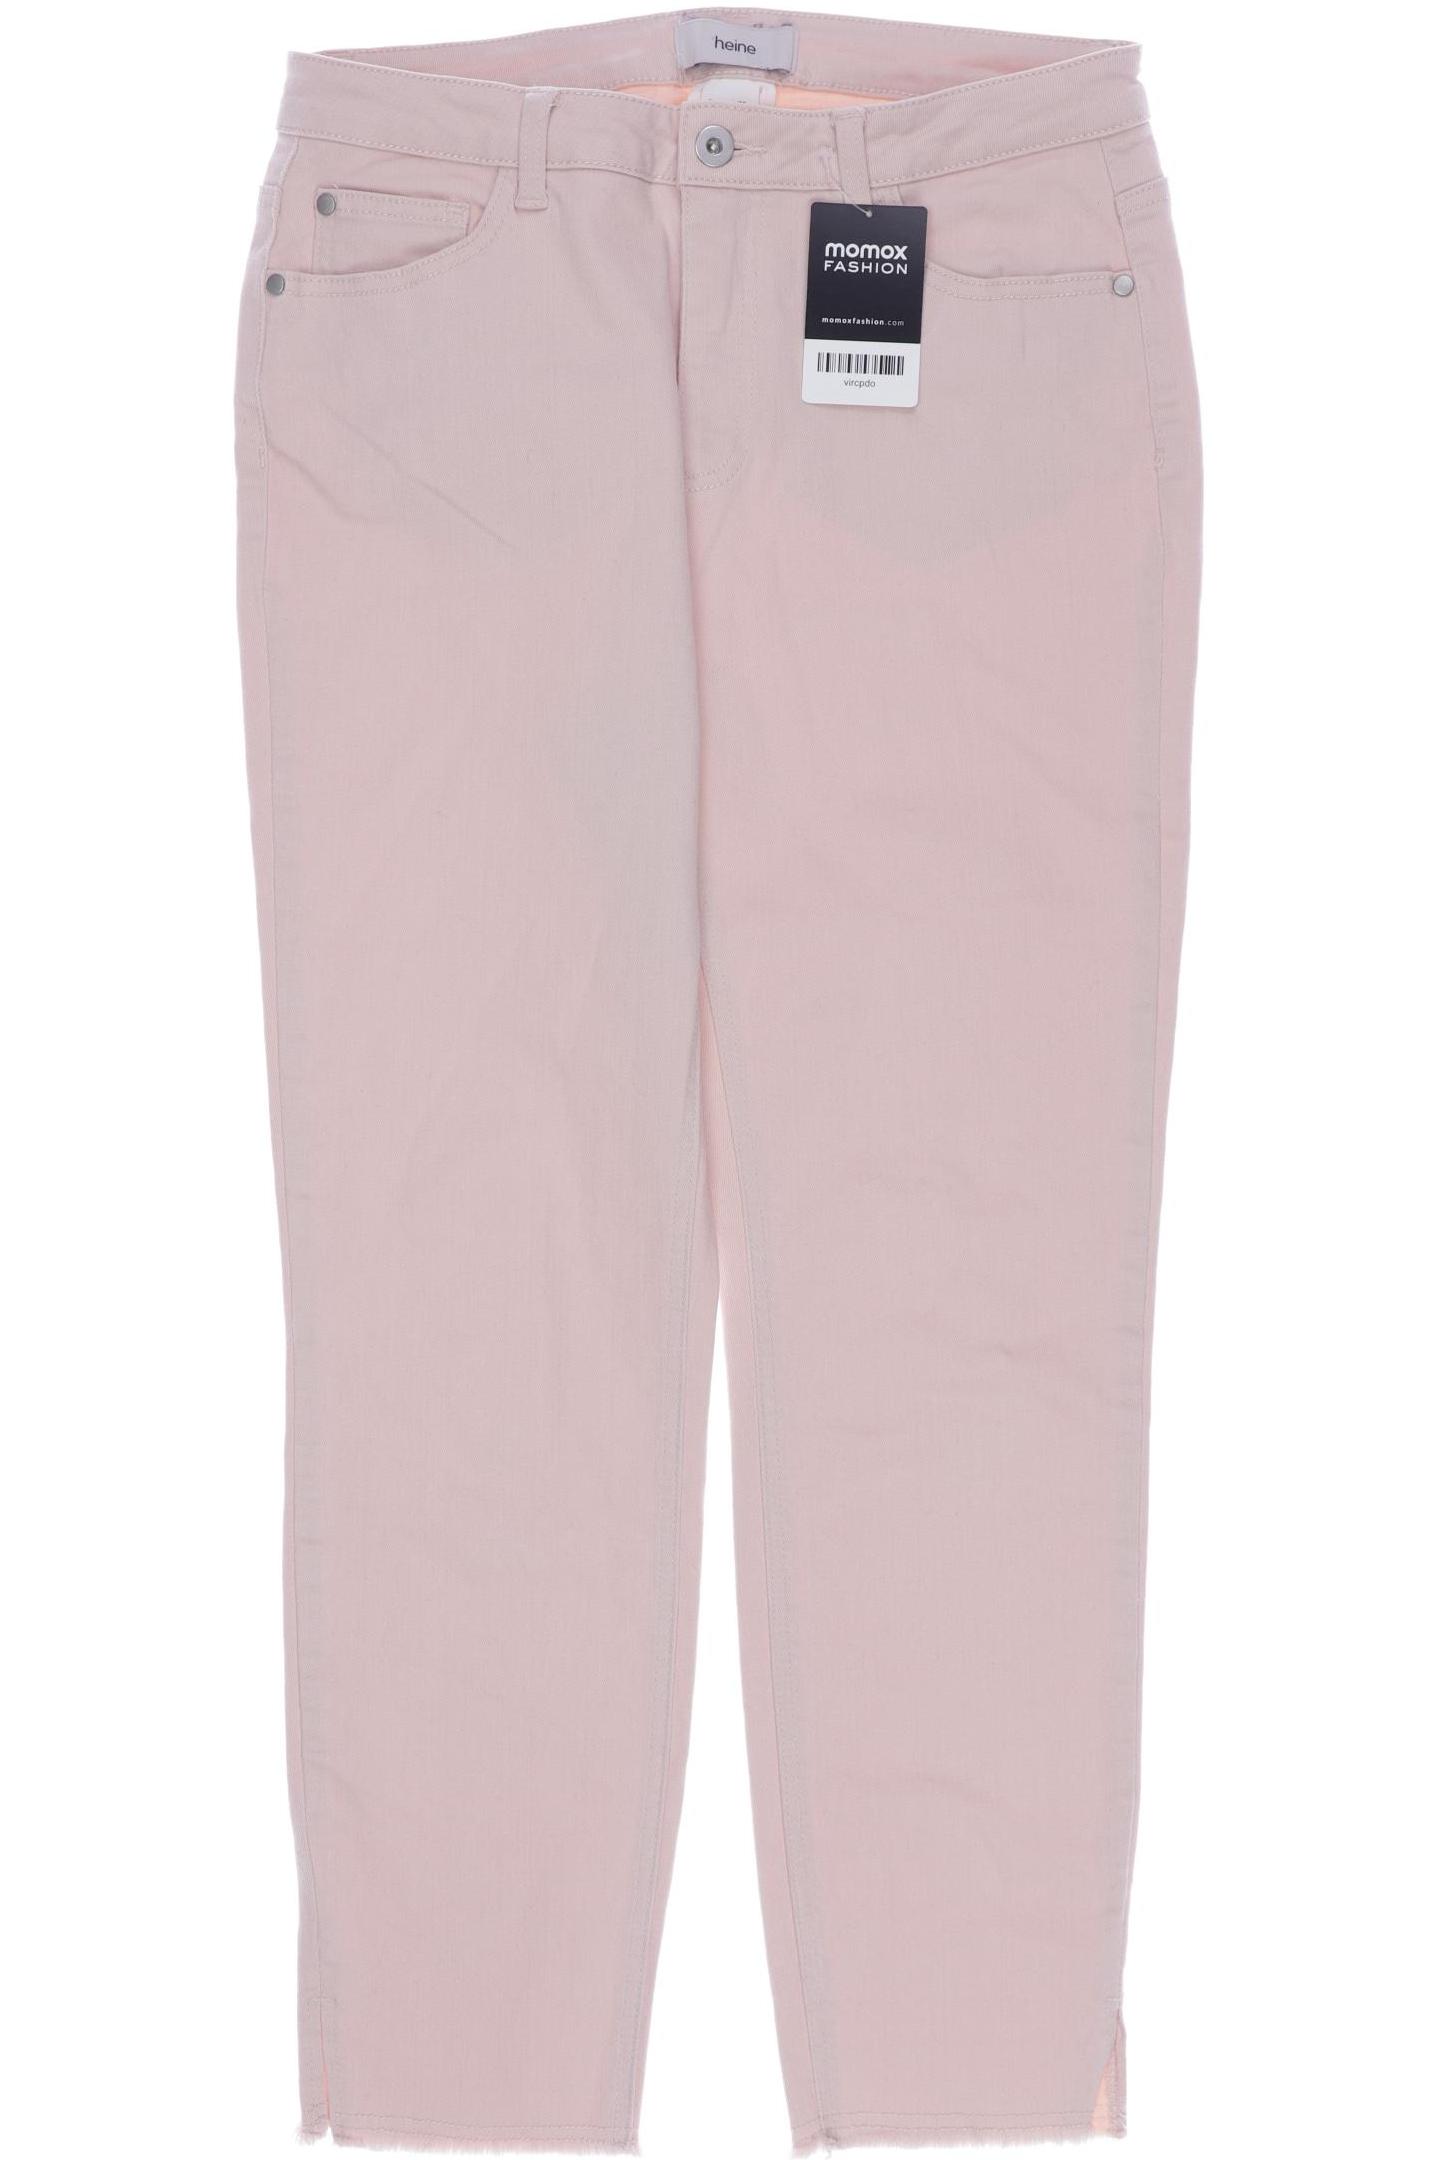 Heine Damen Jeans, pink von heine